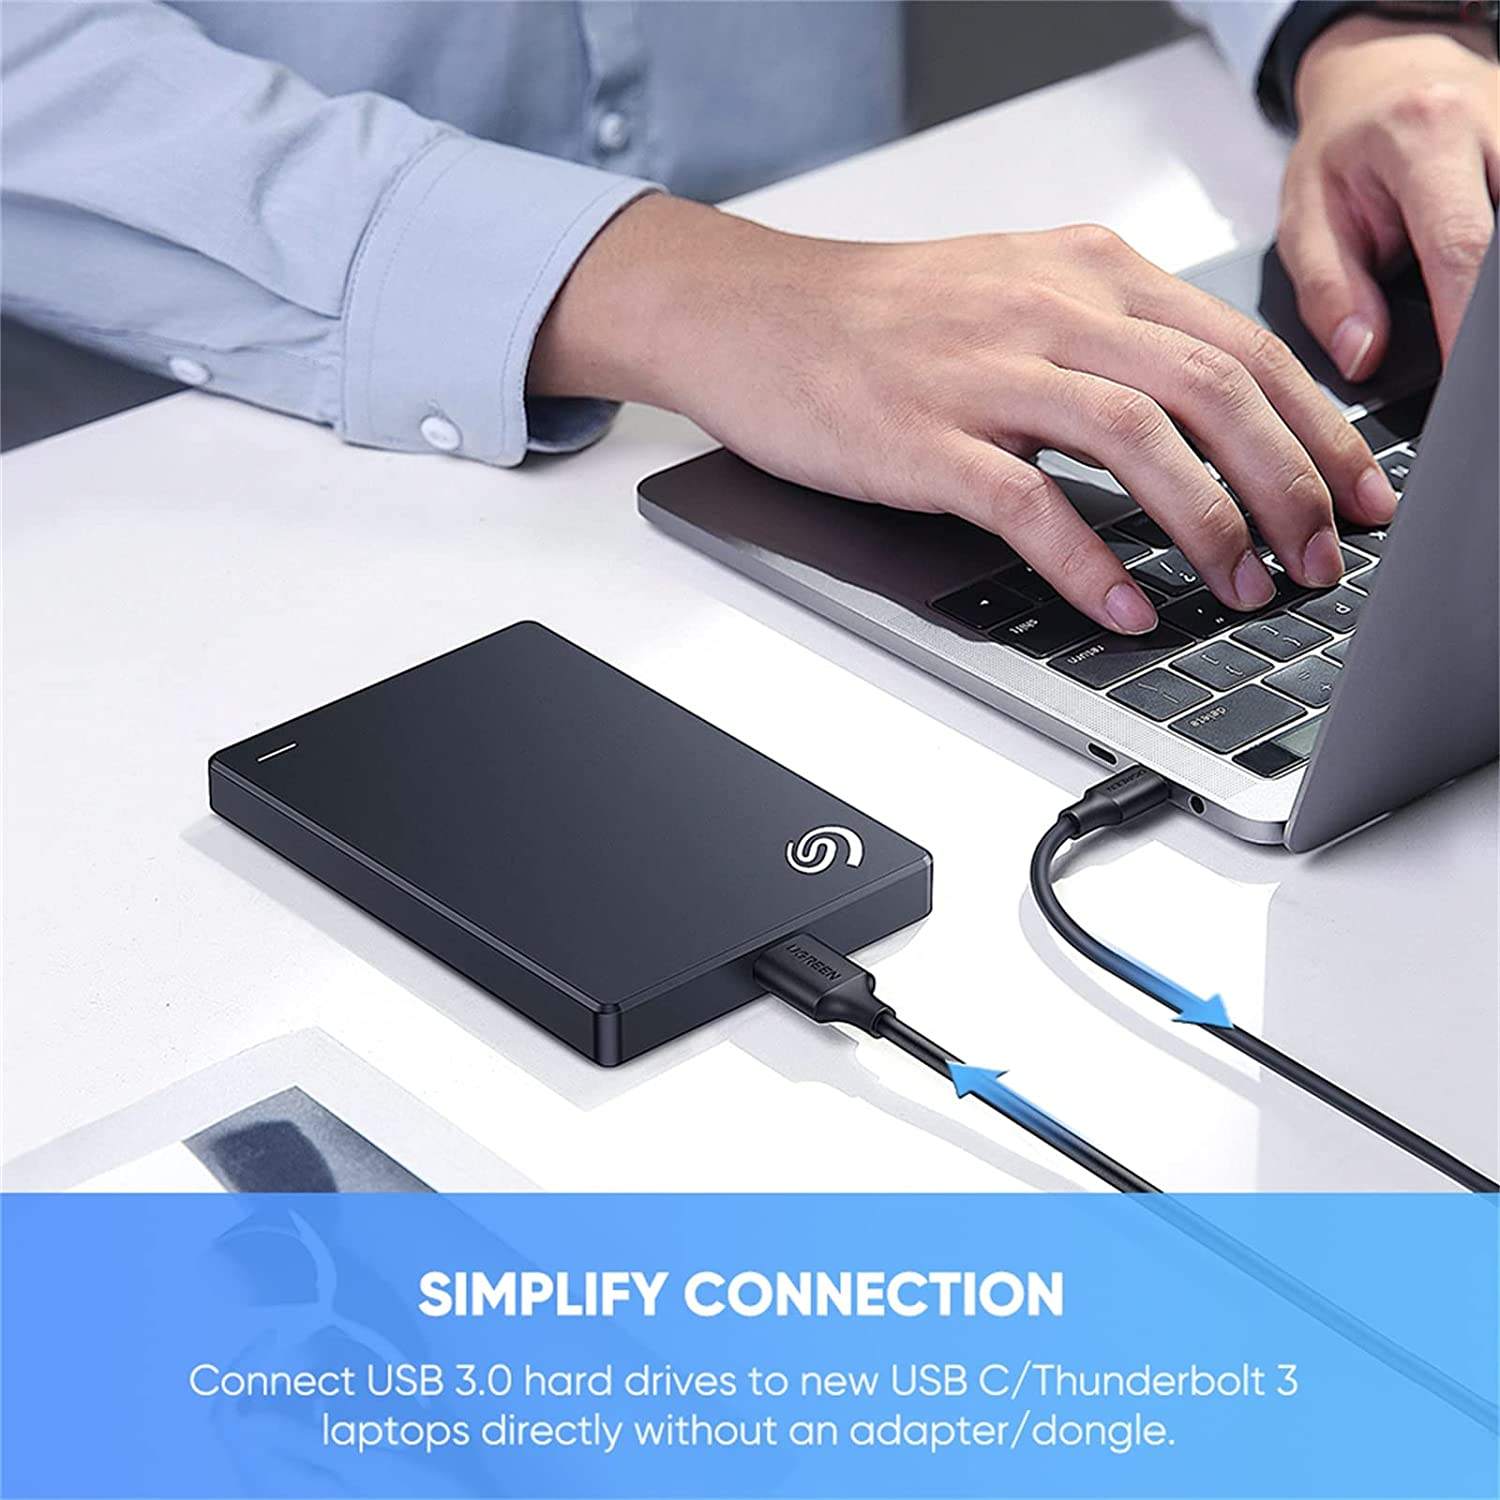 Ugreen 20213 Dây - Cáp USB 2.0 nối dài 5m có hỗ trợ nguồn chính hãng cao cấp